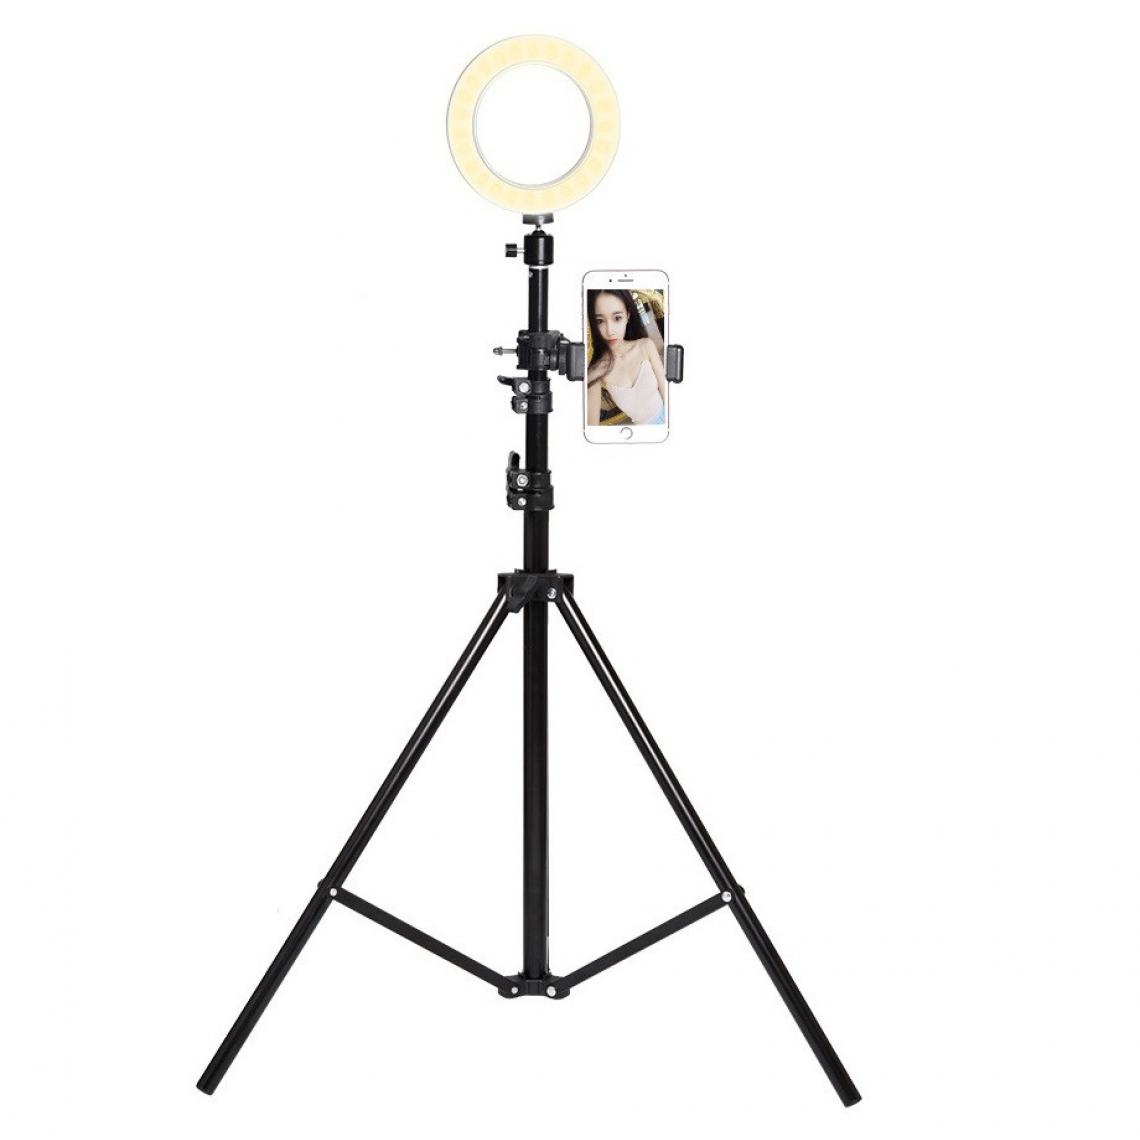 Shot - Trepied Telescopique avec Flash pour ALCATEL SHINE LITE Smartphone Reglable Photo - Autres accessoires smartphone